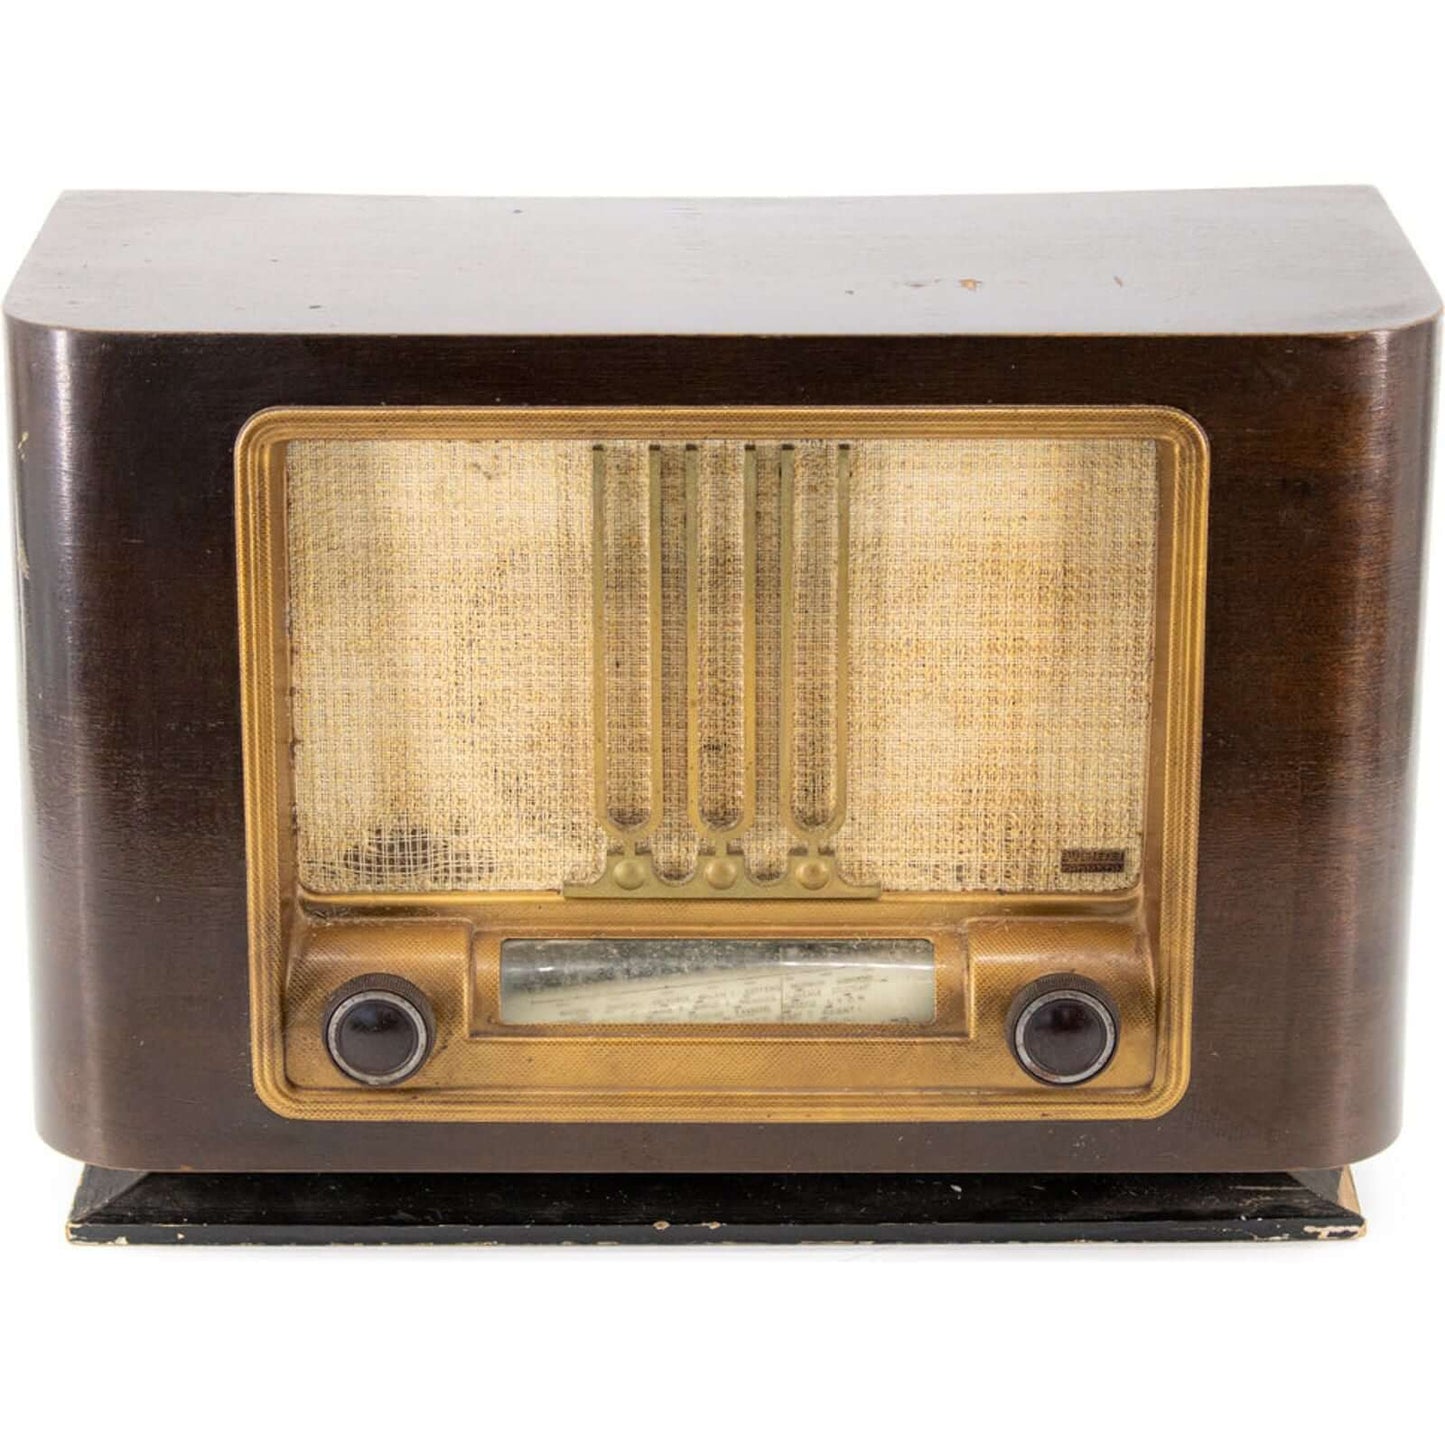 Radio Bluetooth Thomson Vintage 50’S enceinte connectée française haut de gamme absolument prodige radio vintage